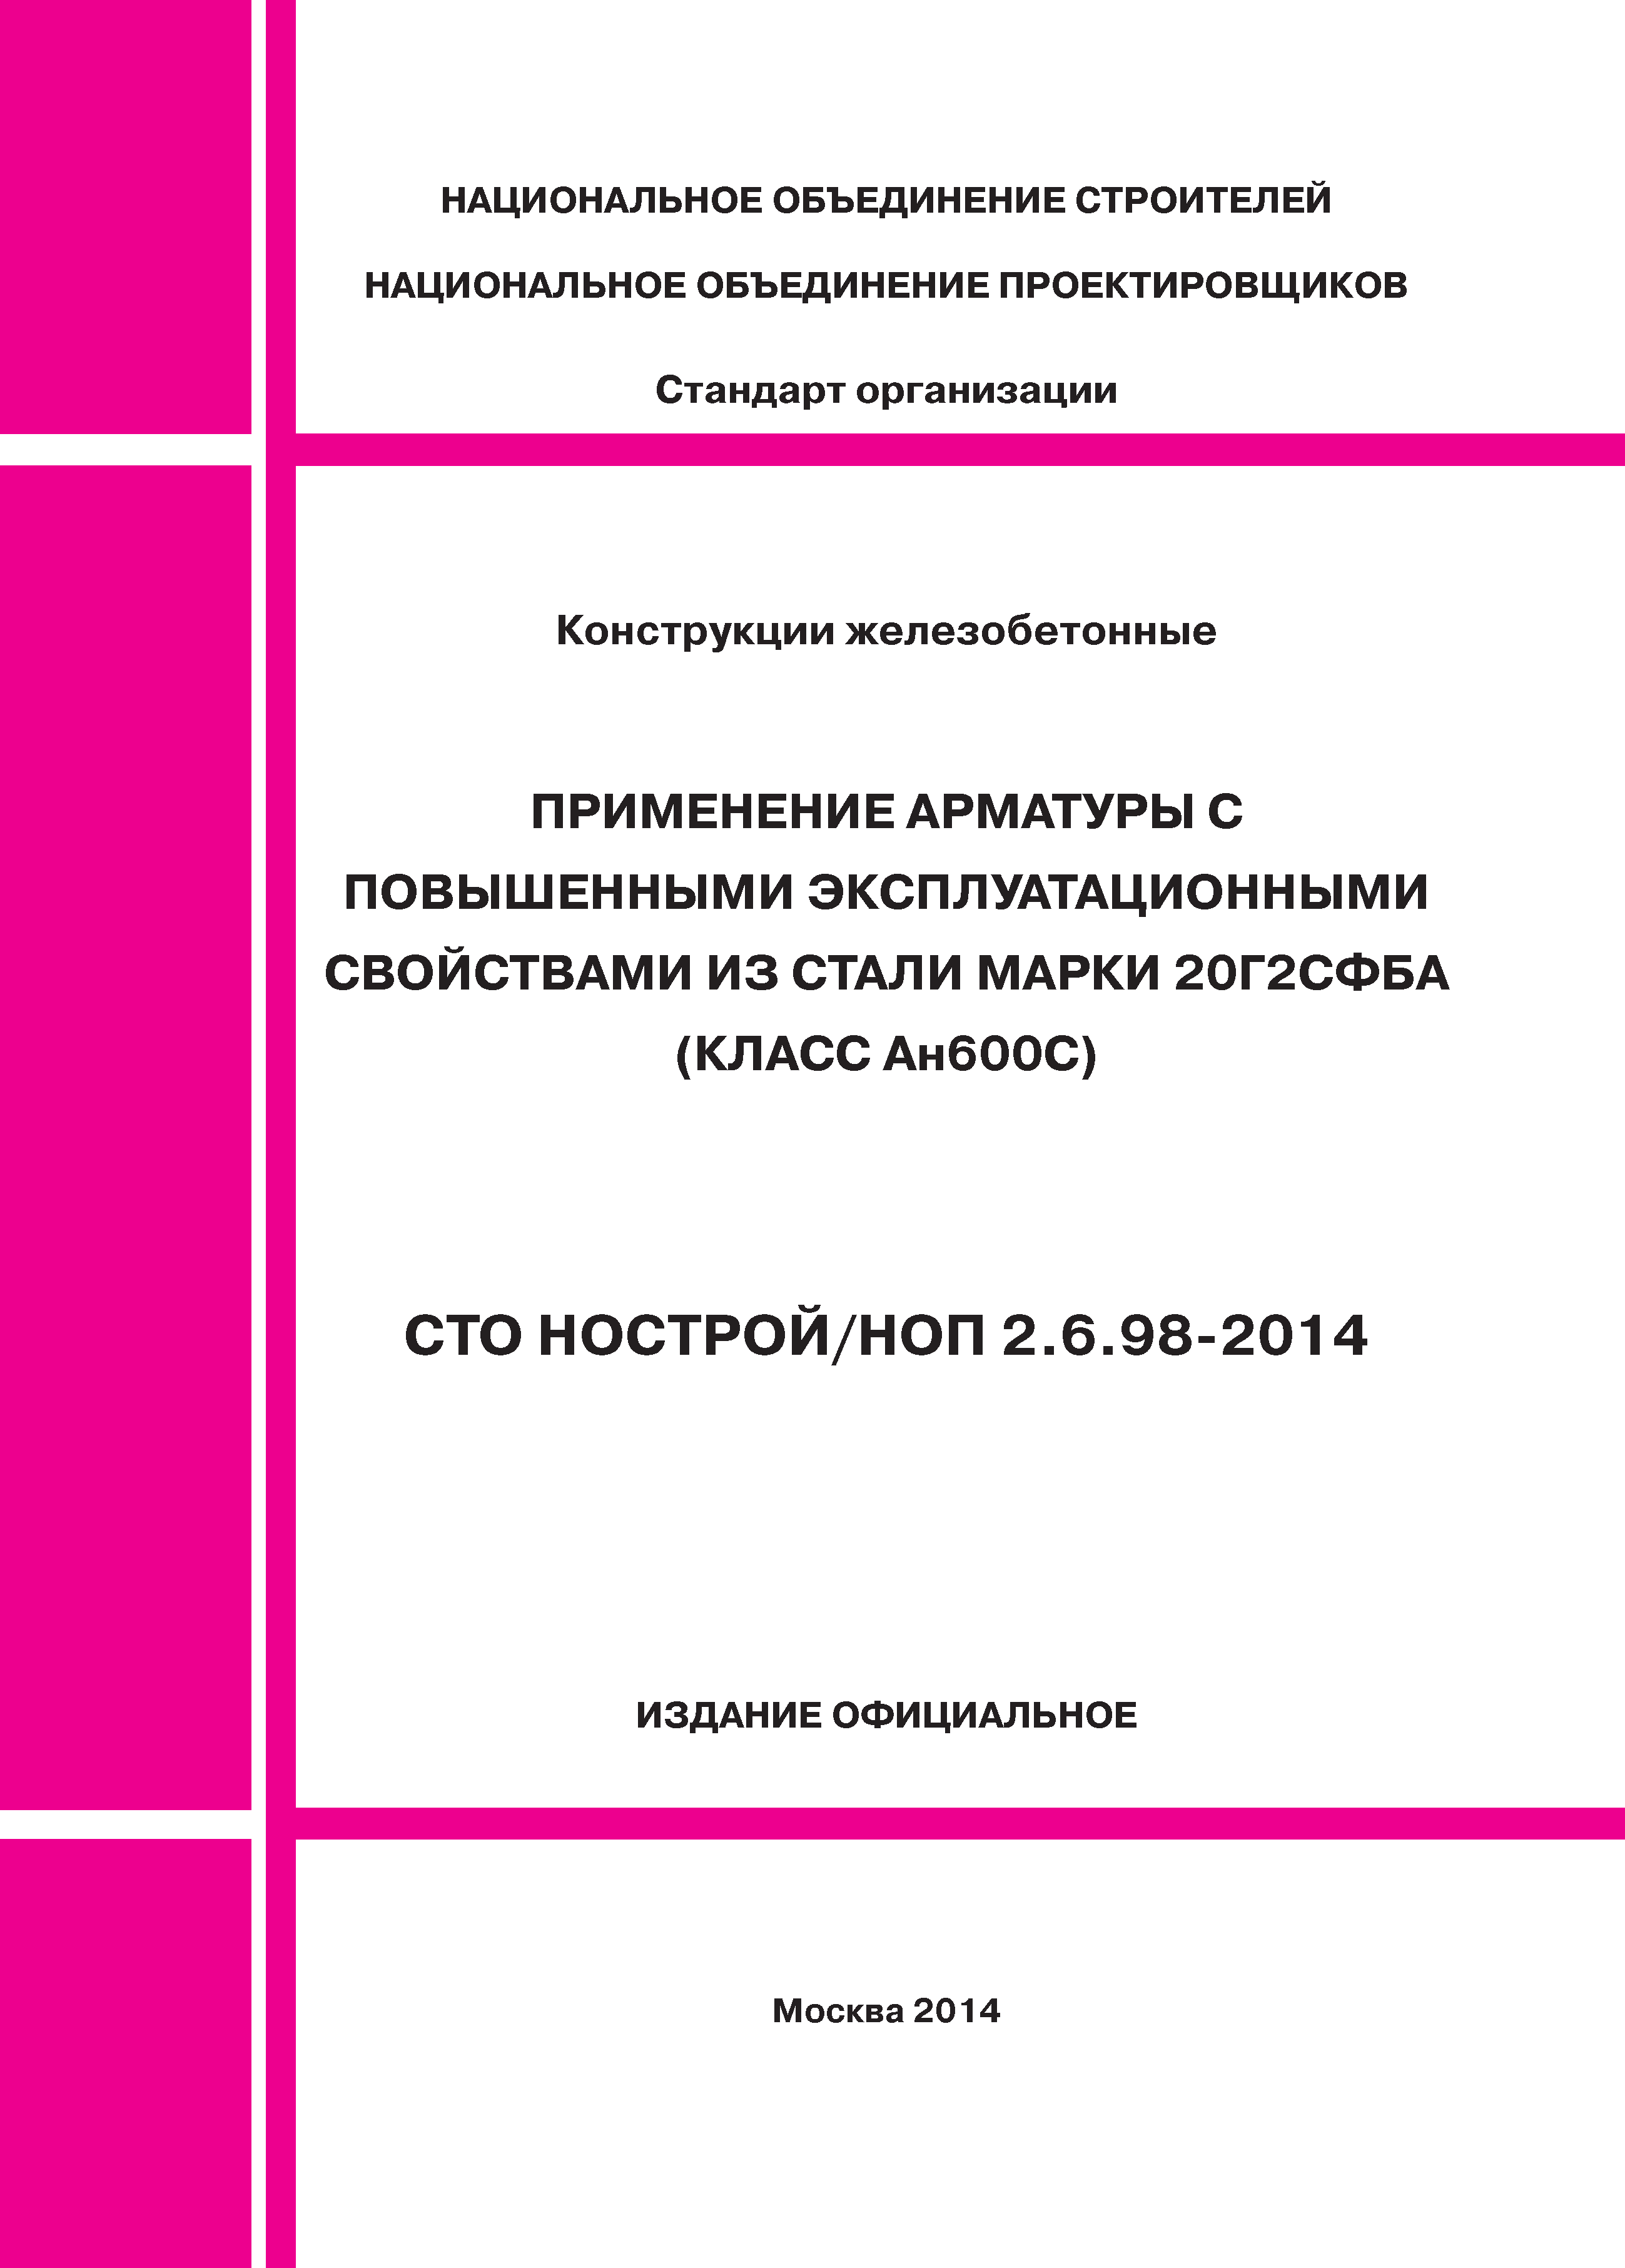 СТО НОСТРОЙ/НОП 2.6.98-2014